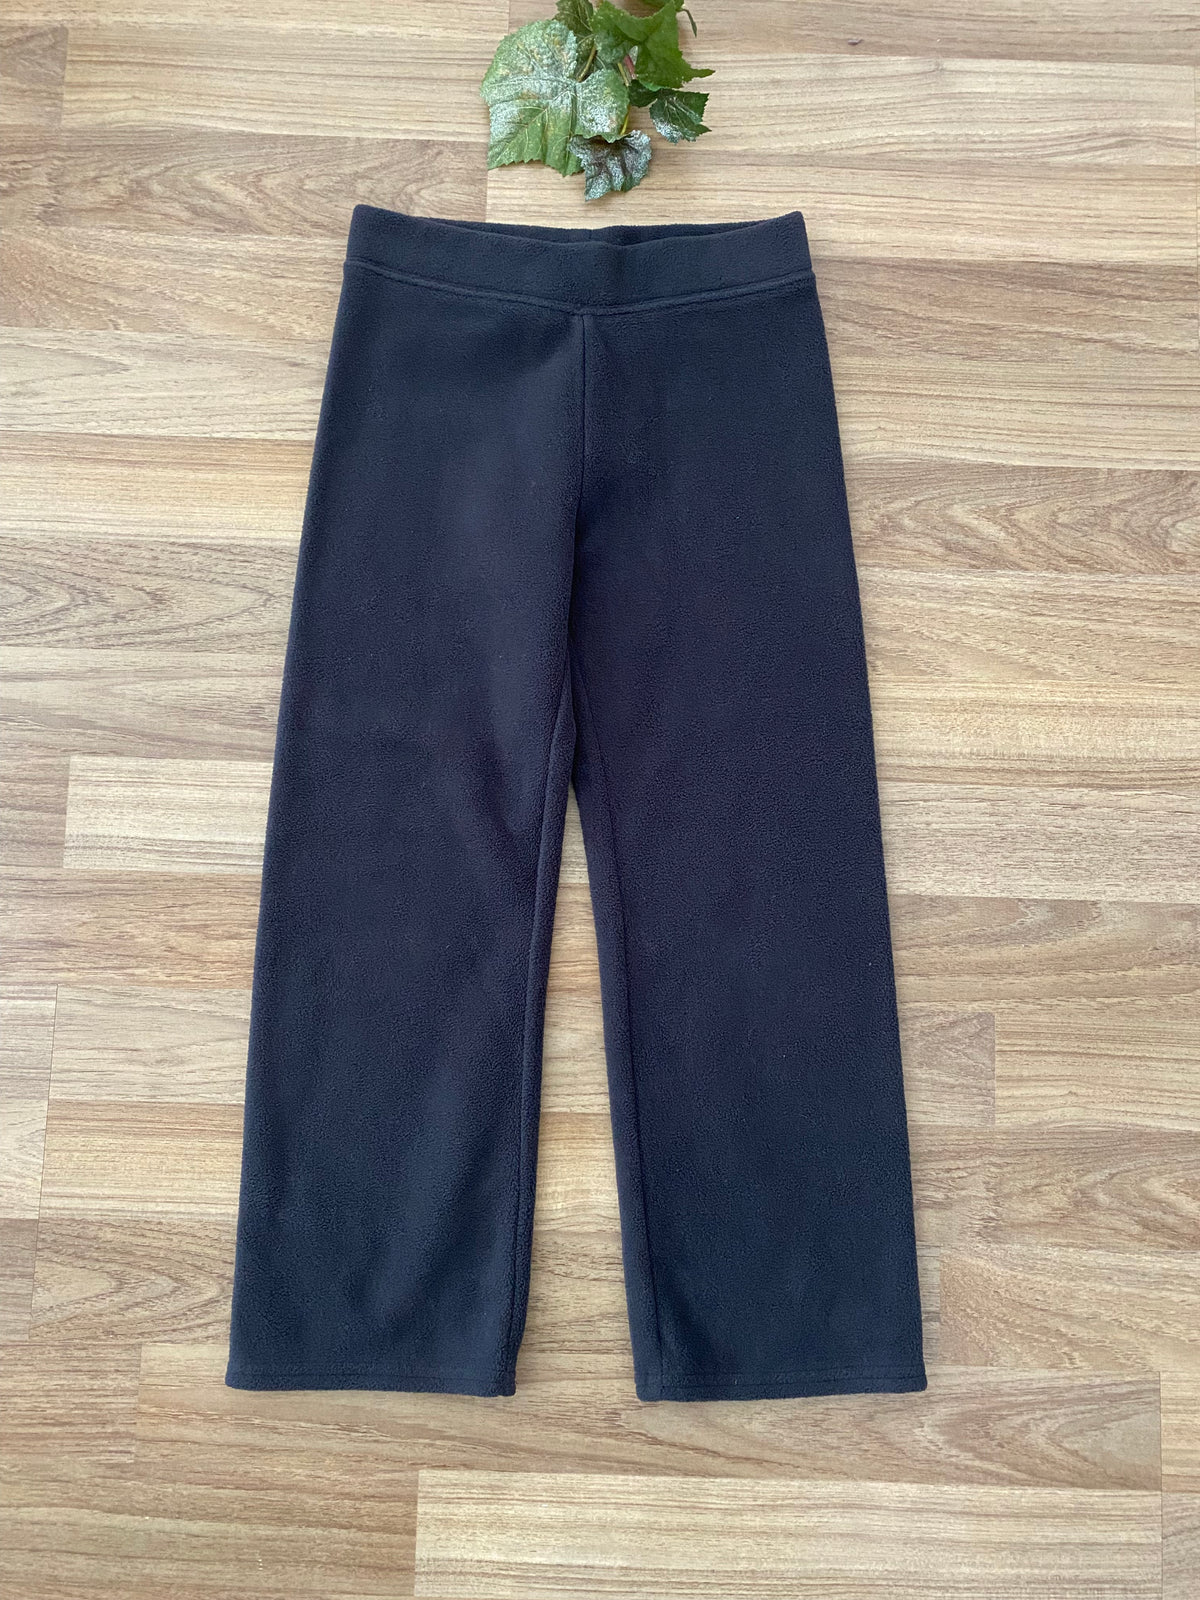 Fleece Pants (Girls Size 5)